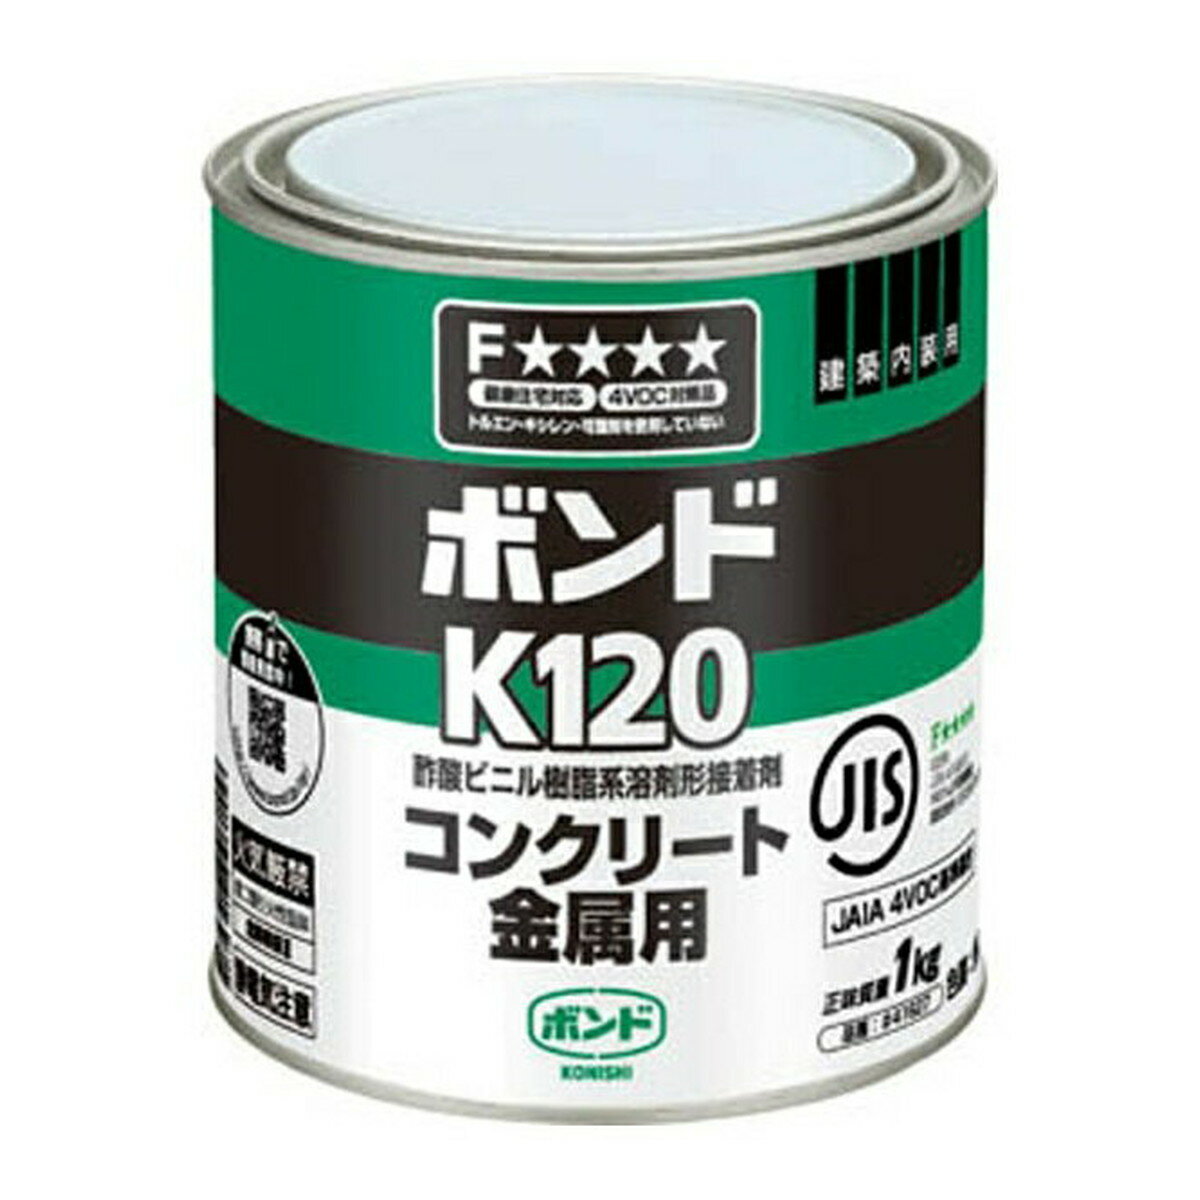 【送料込・まとめ買い×4個セット】コニシ ボンド K120 コンクリート金属用 1kg 缶